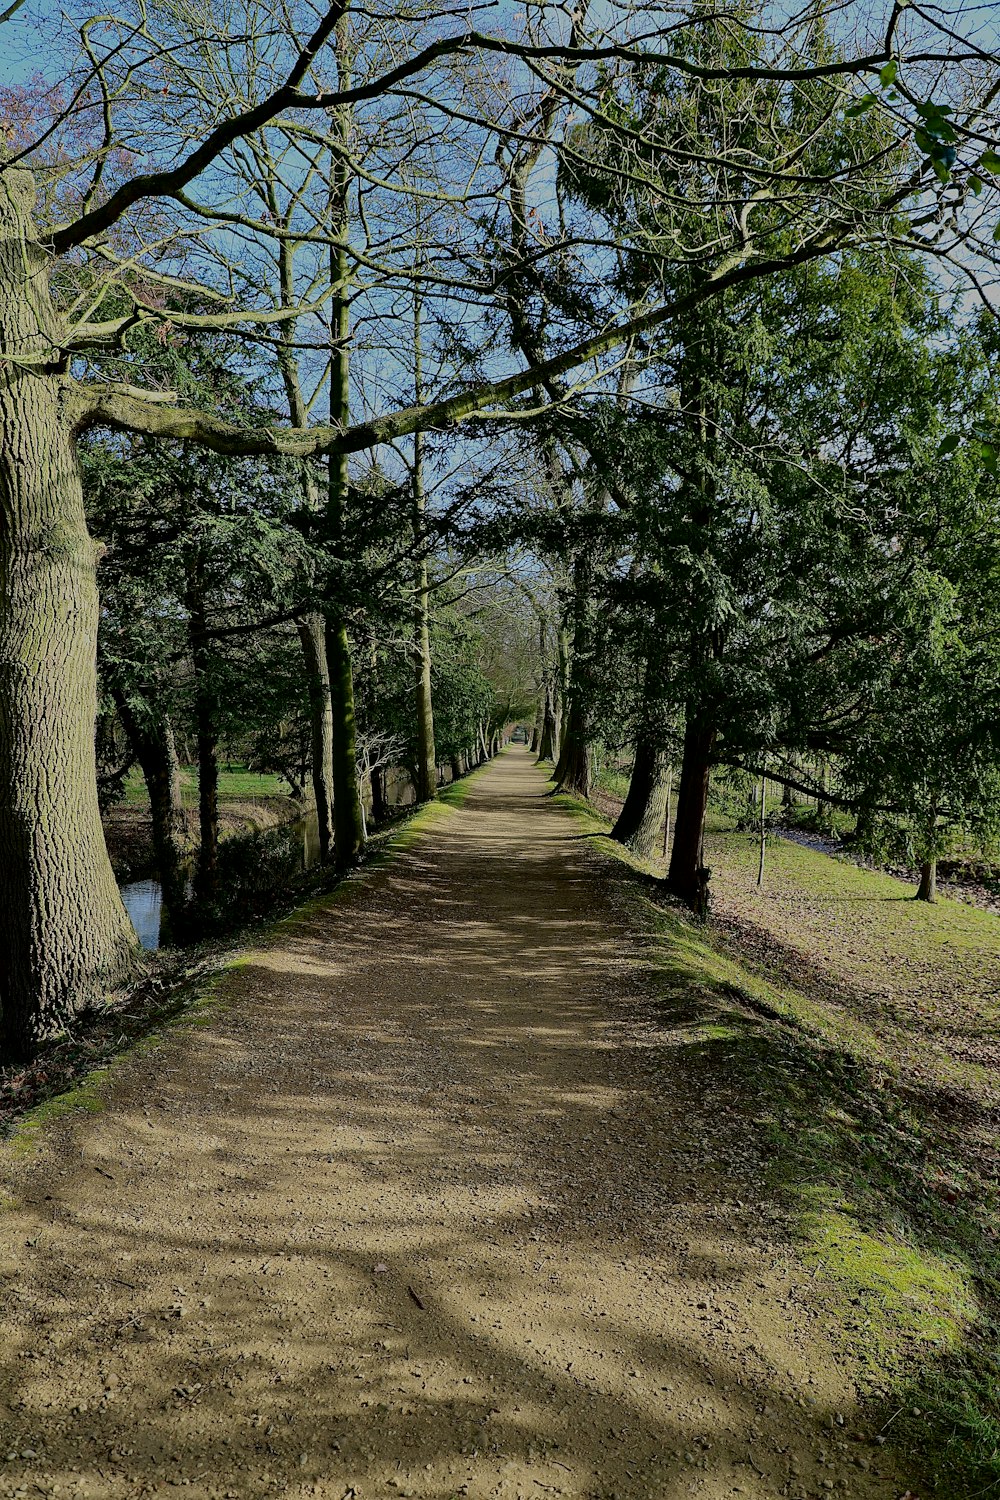 Un camino de tierra rodeado de árboles y hierba